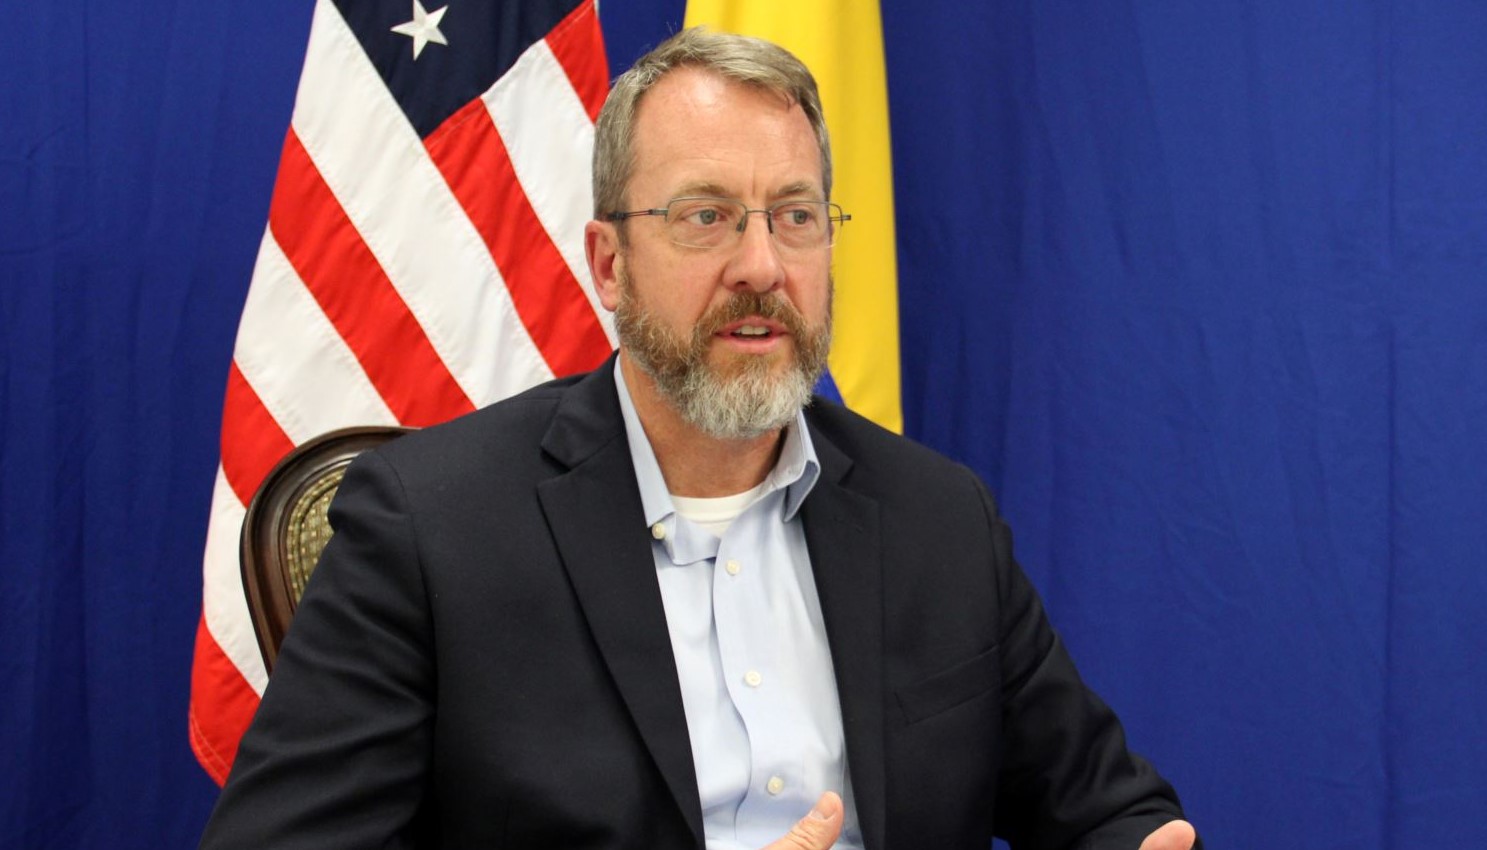 Embajador de EEUU para Venezuela: “Levantar las sanciones sin compromisos sería un error”